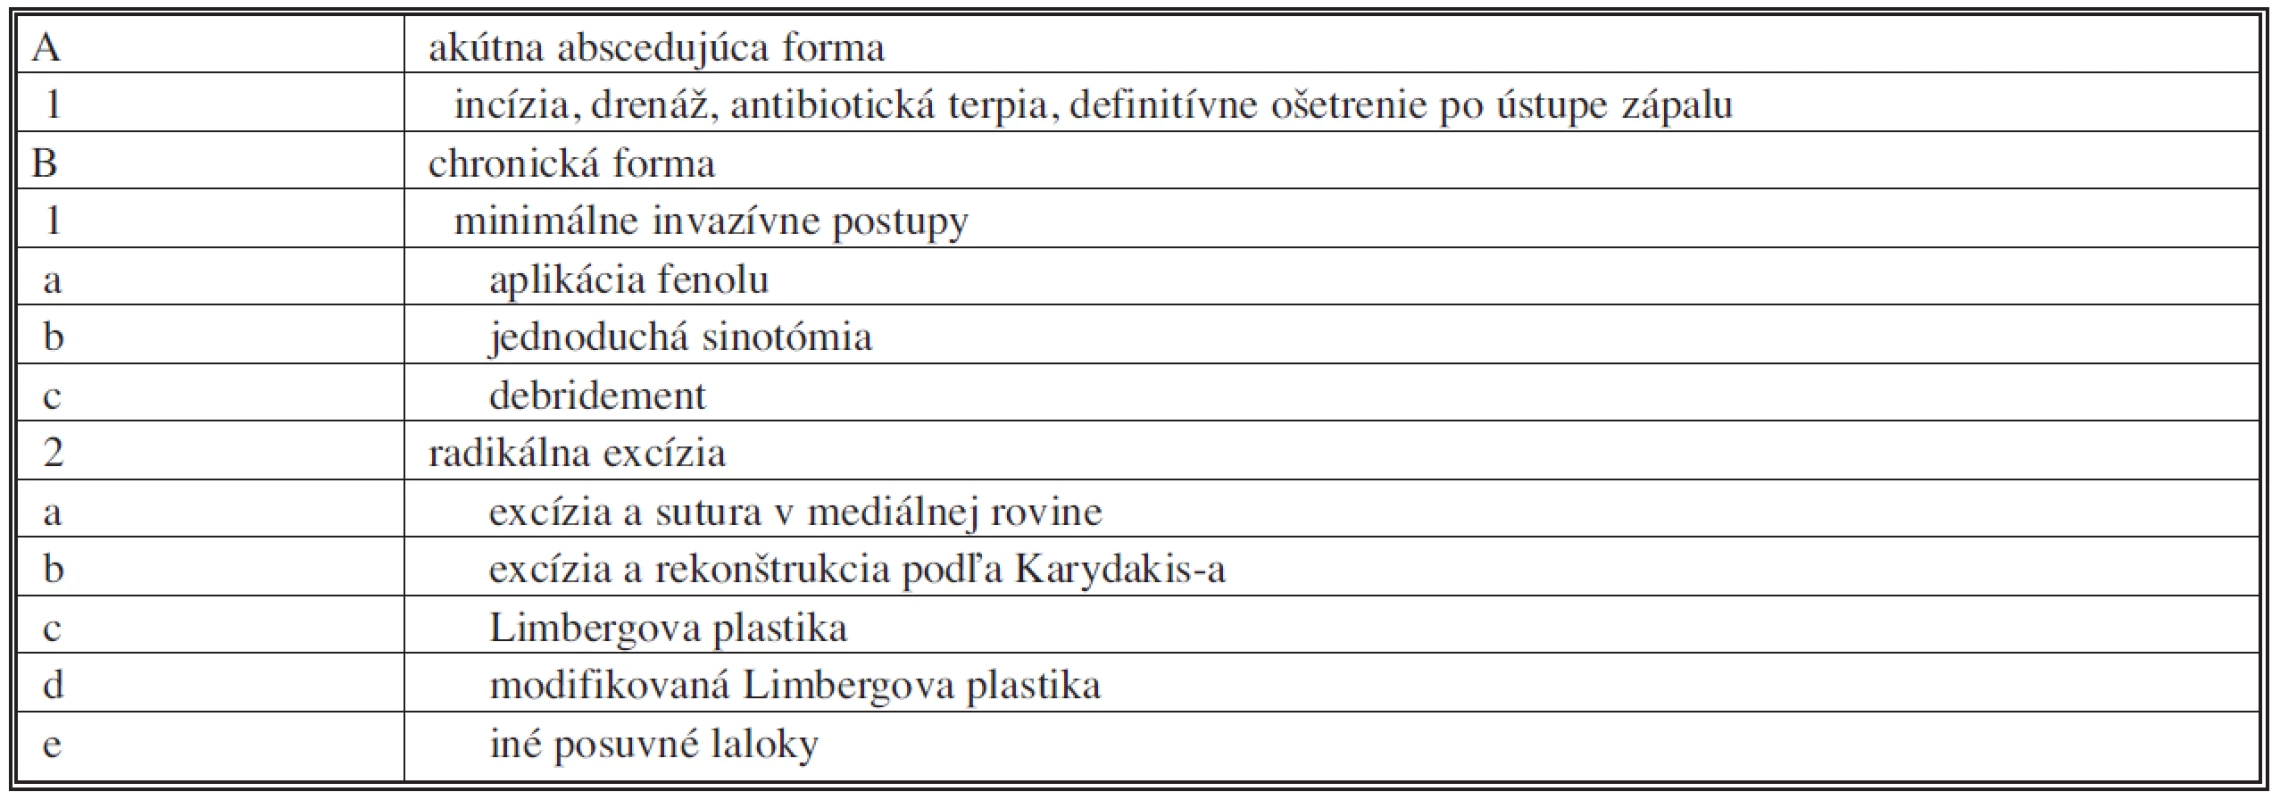 Základné rozdelenie terapeutických možností pilonidálnej choroby – voľne podľa [4]
Tab. 1. Basic division of pilonidal sinus disease therapeutic possibilities – according to [4]